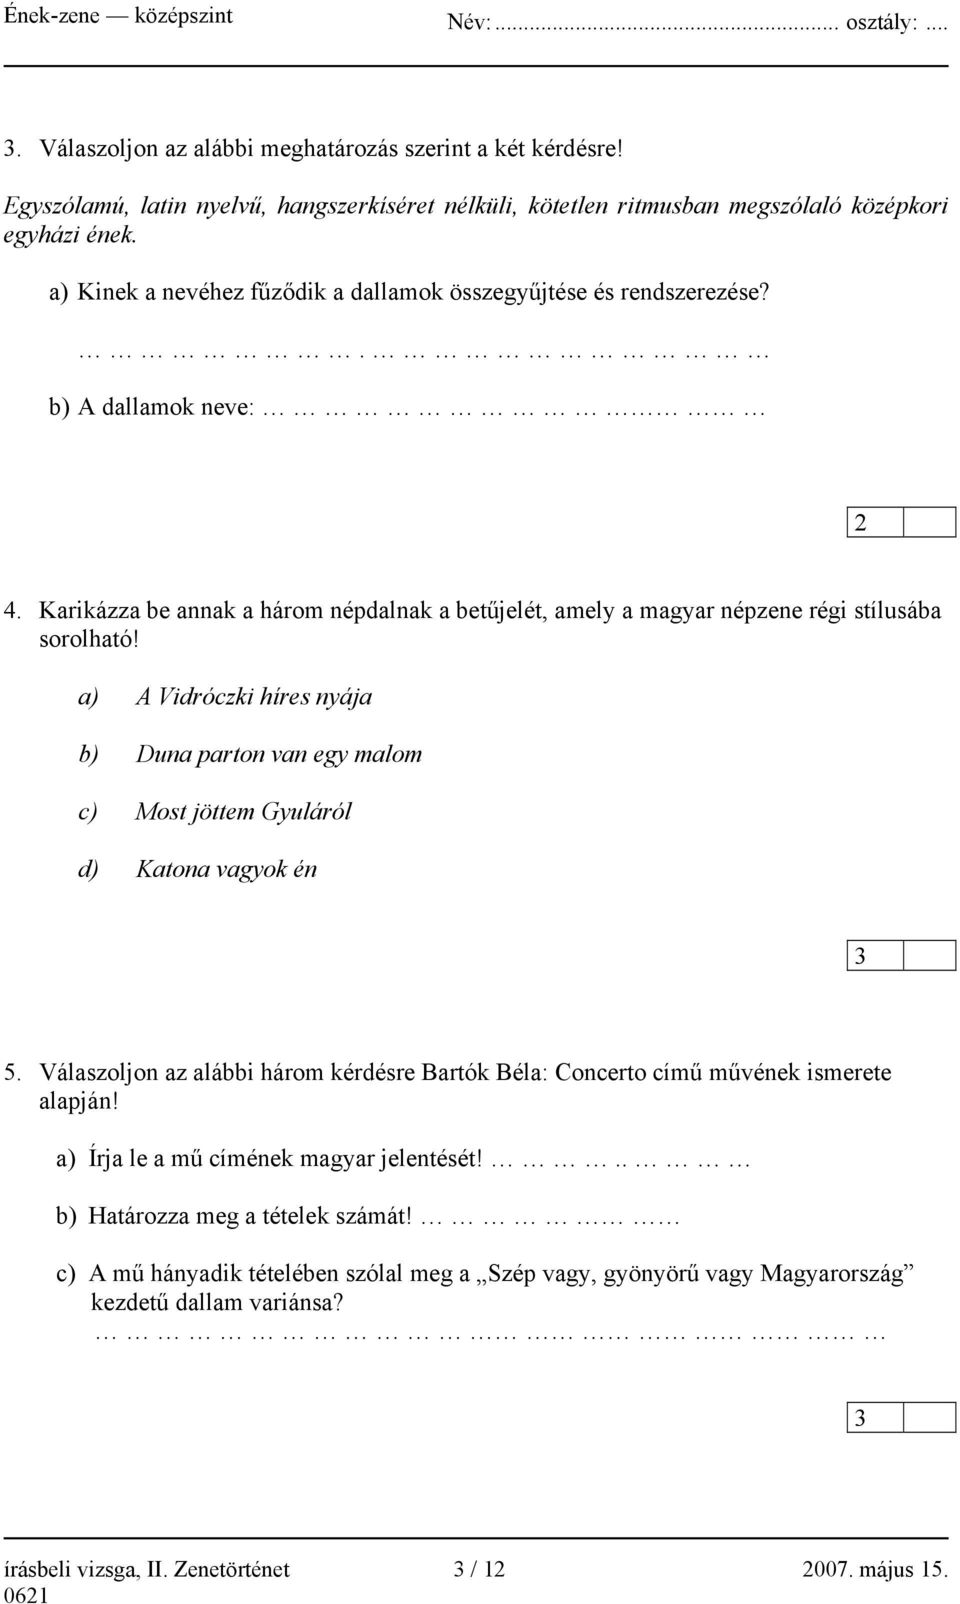 a) A Vidróczki híres nyája b) Duna parton van egy malom c) Most jöttem Gyuláról d) Katona vagyok én 5. Válaszoljon az alábbi három kérdésre Bartók Béla: Concerto című művének ismerete alapján!